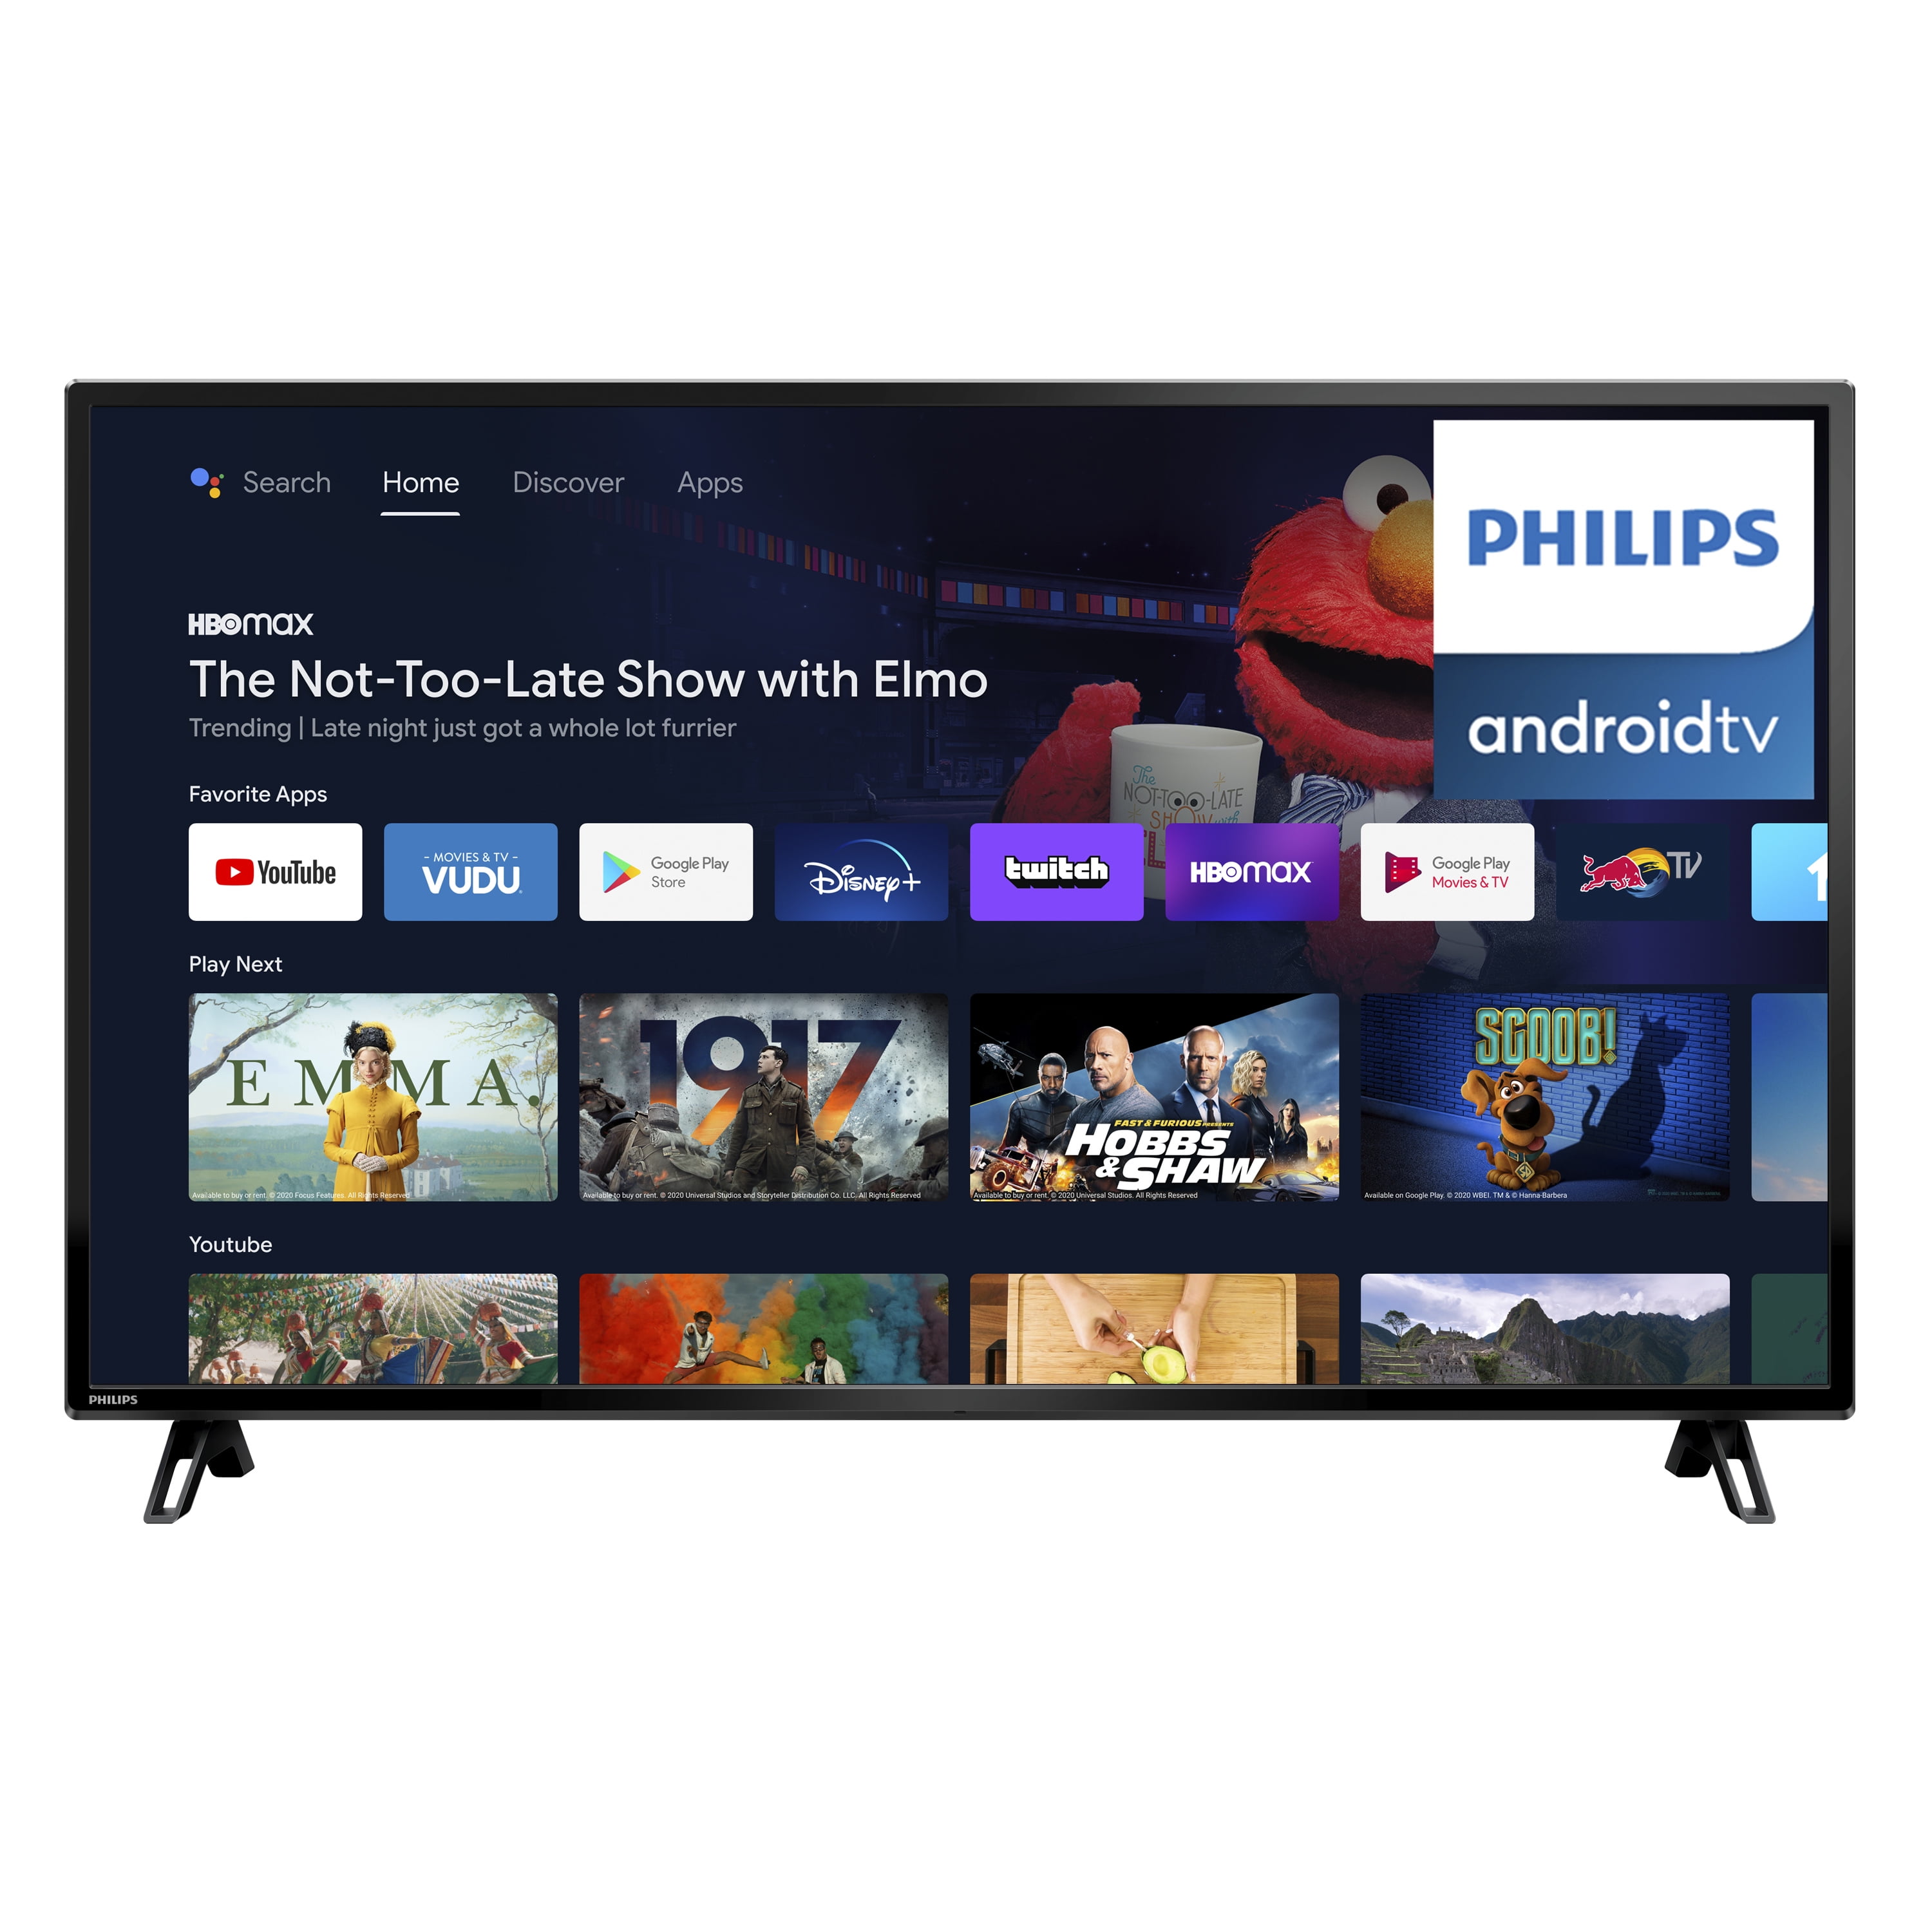 Best Buy: Philips 55 Class / 1080p / 120Hz / LED-LCD HDTV 55PFL7505D/F7